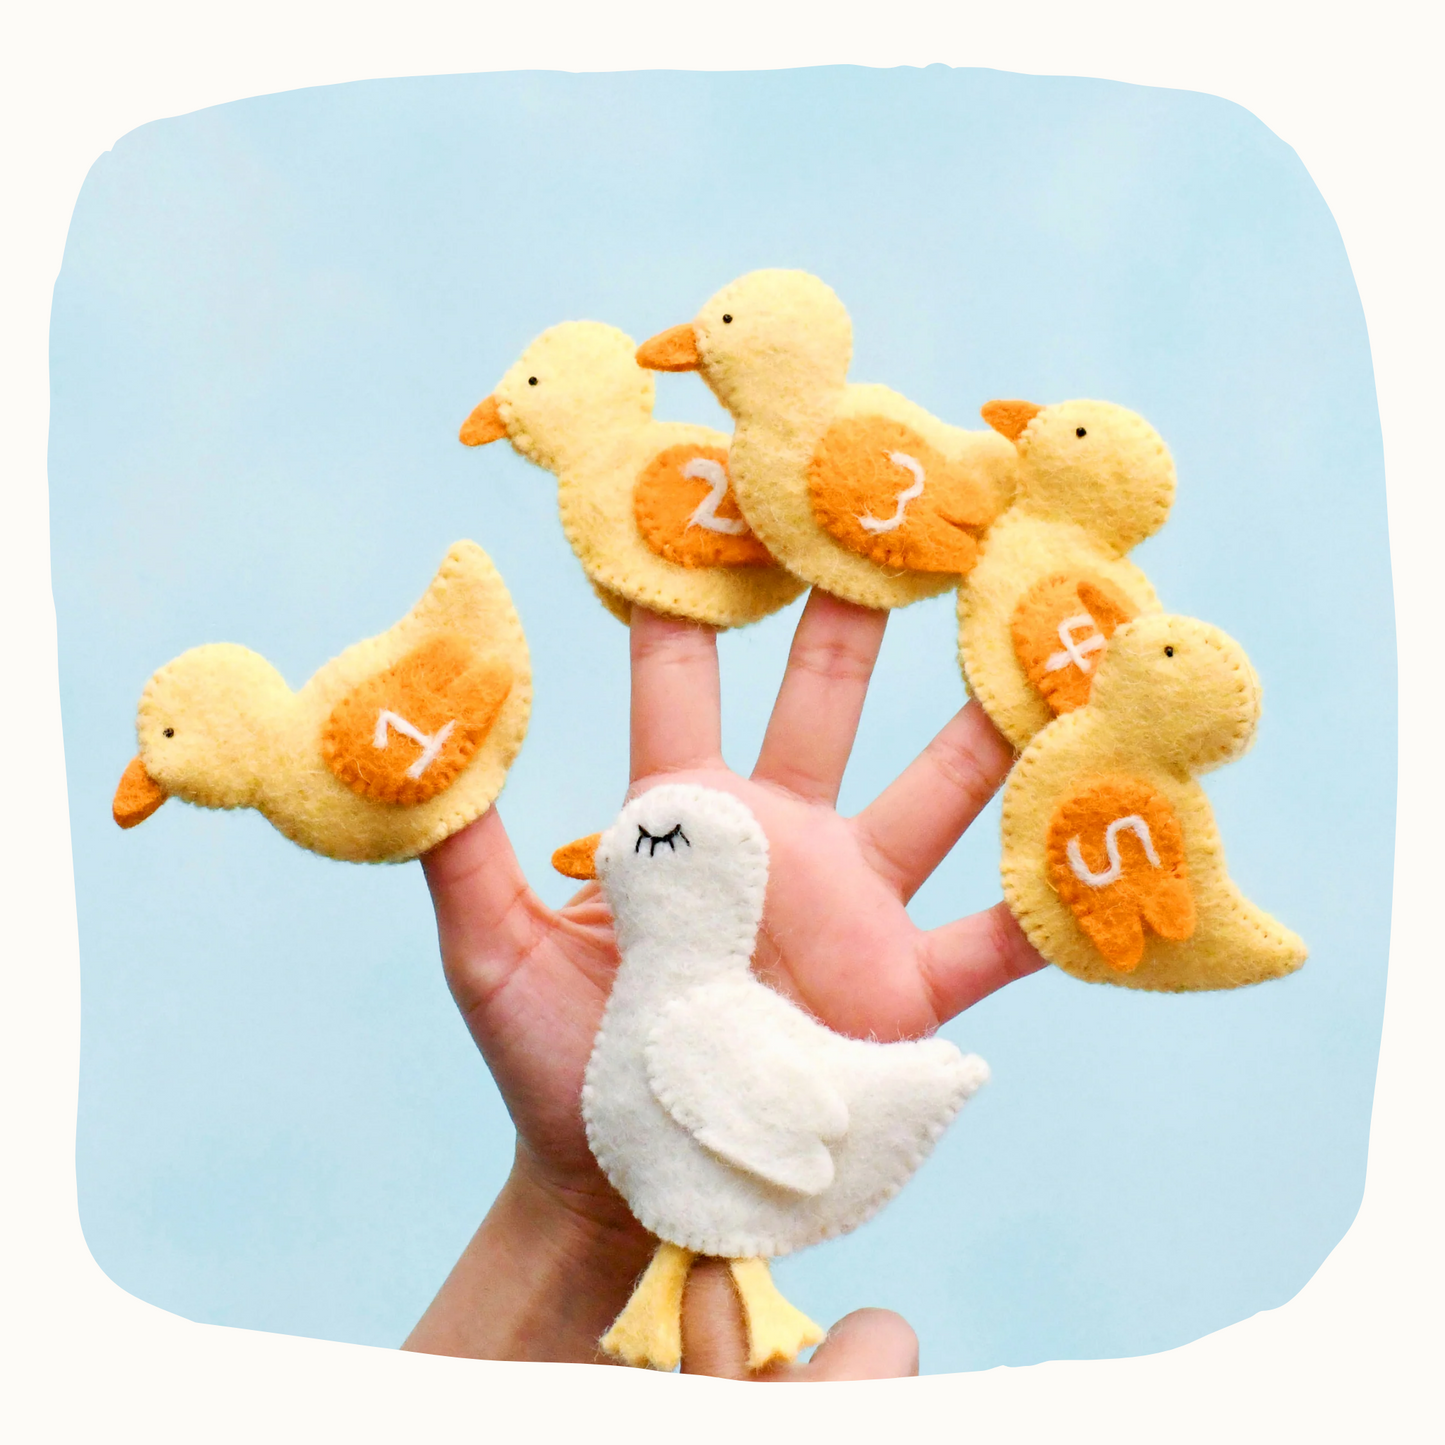 Five Little Ducks, Finger Puppet Set